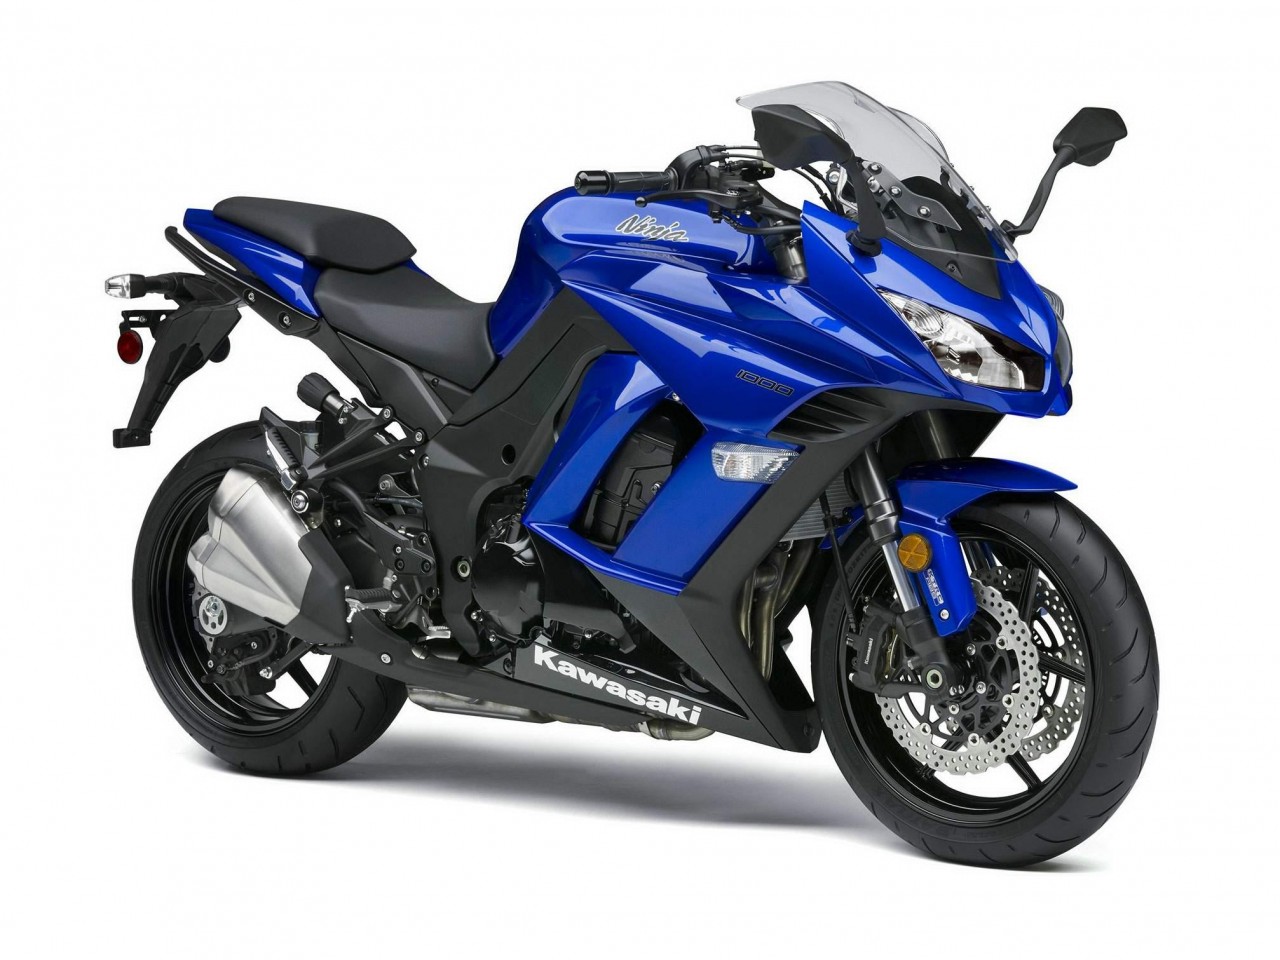 2014 川崎忍者 Kawasaki Ninja 1000_新车新品_资讯中心_全球摩托车网